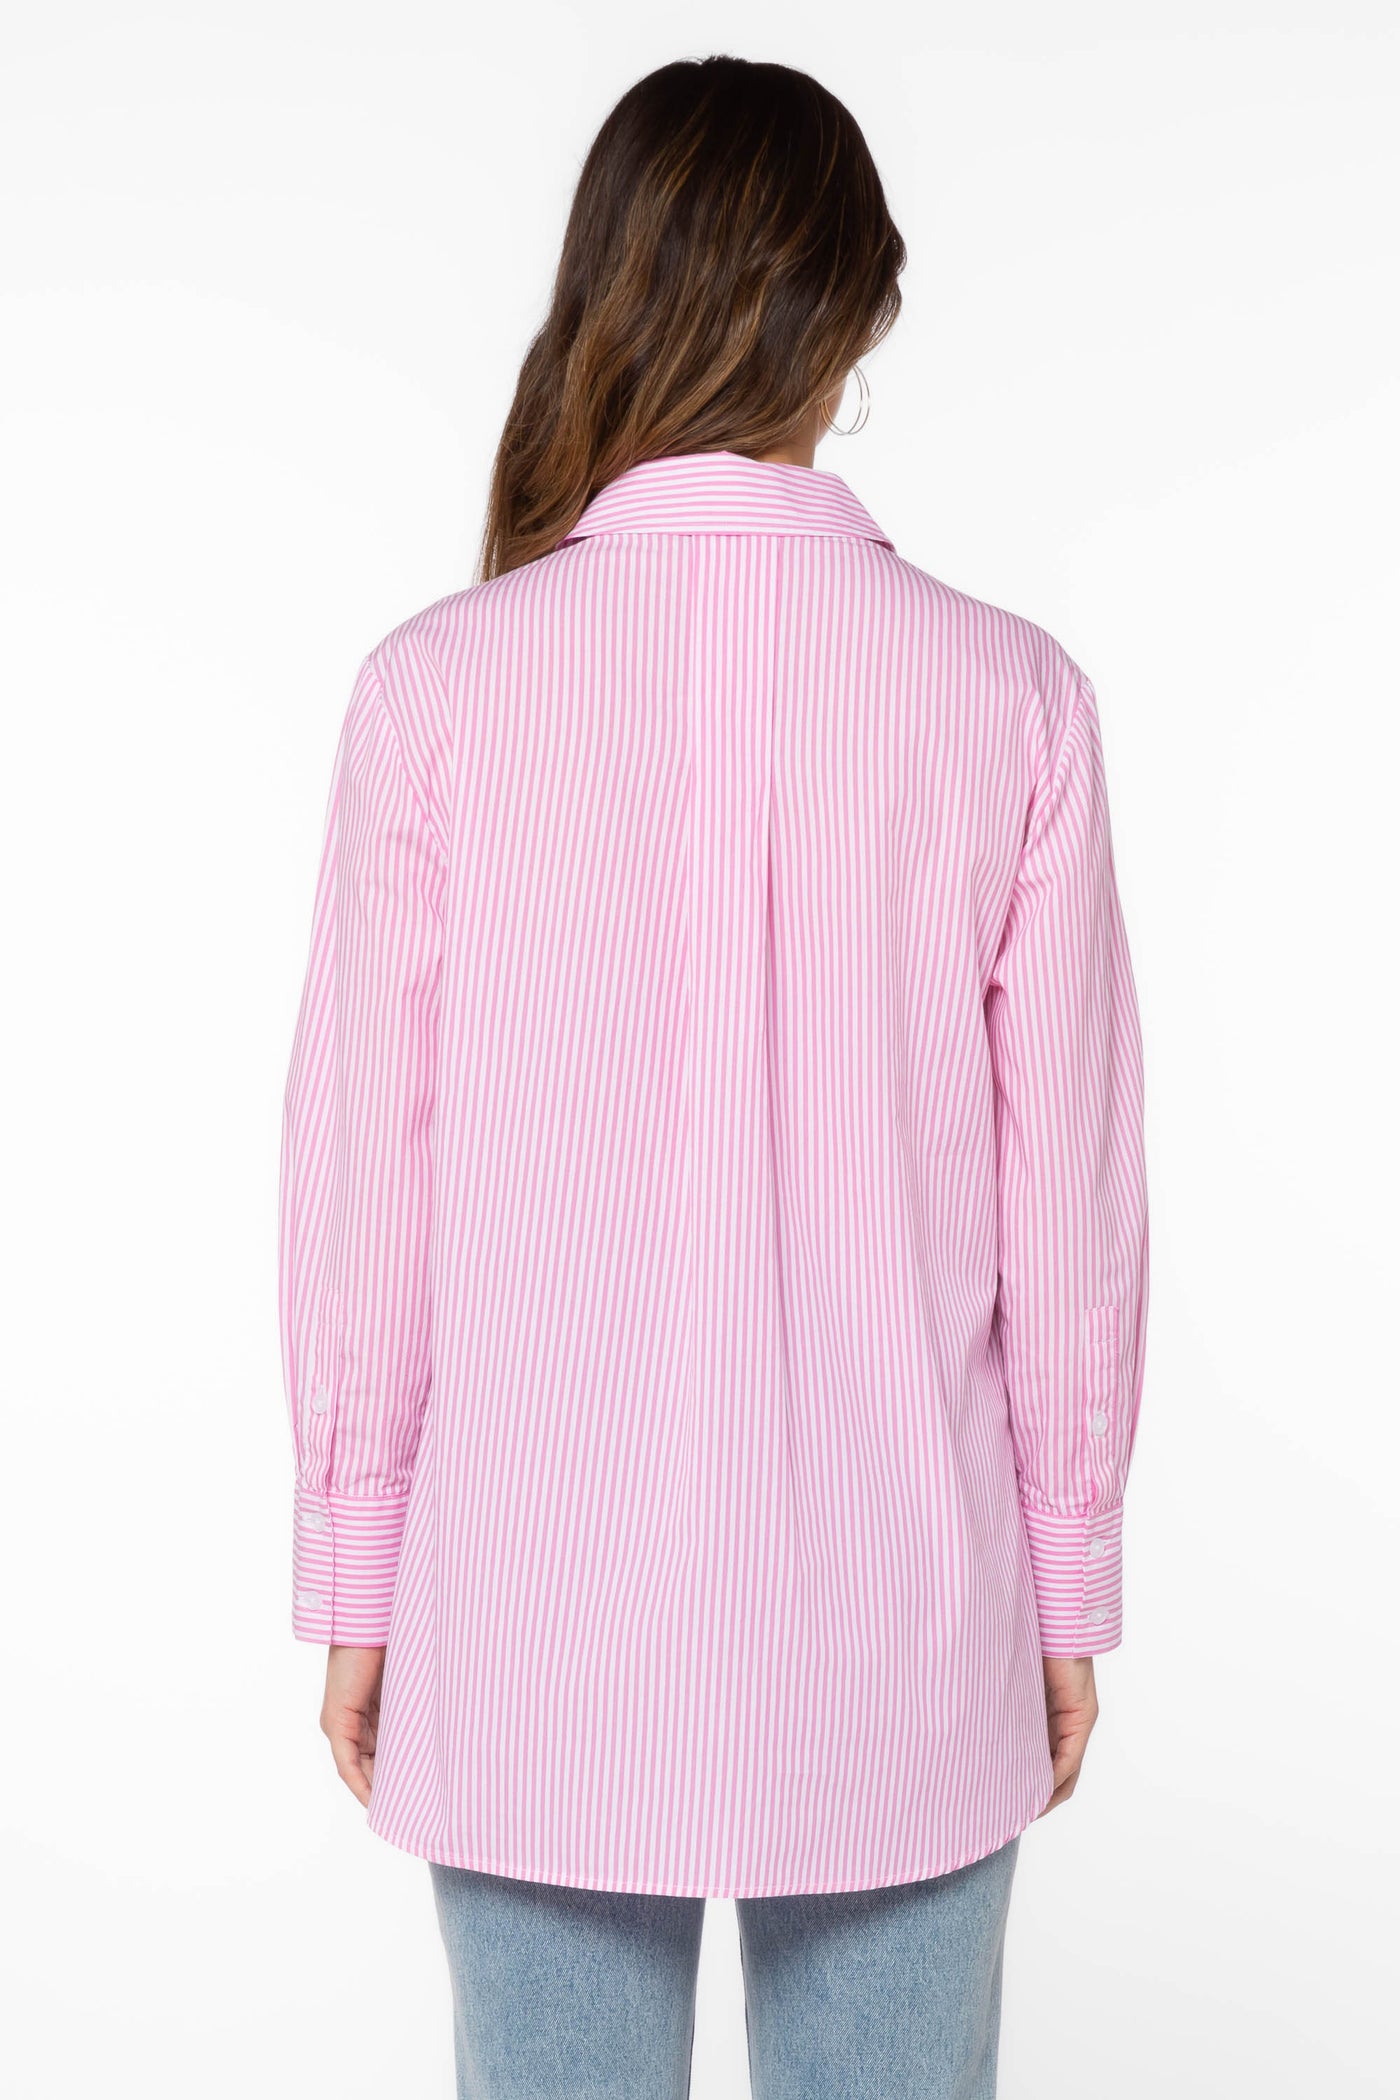 Westerly Pink Stripe Shirt - Tops - Velvet Heart Clothing